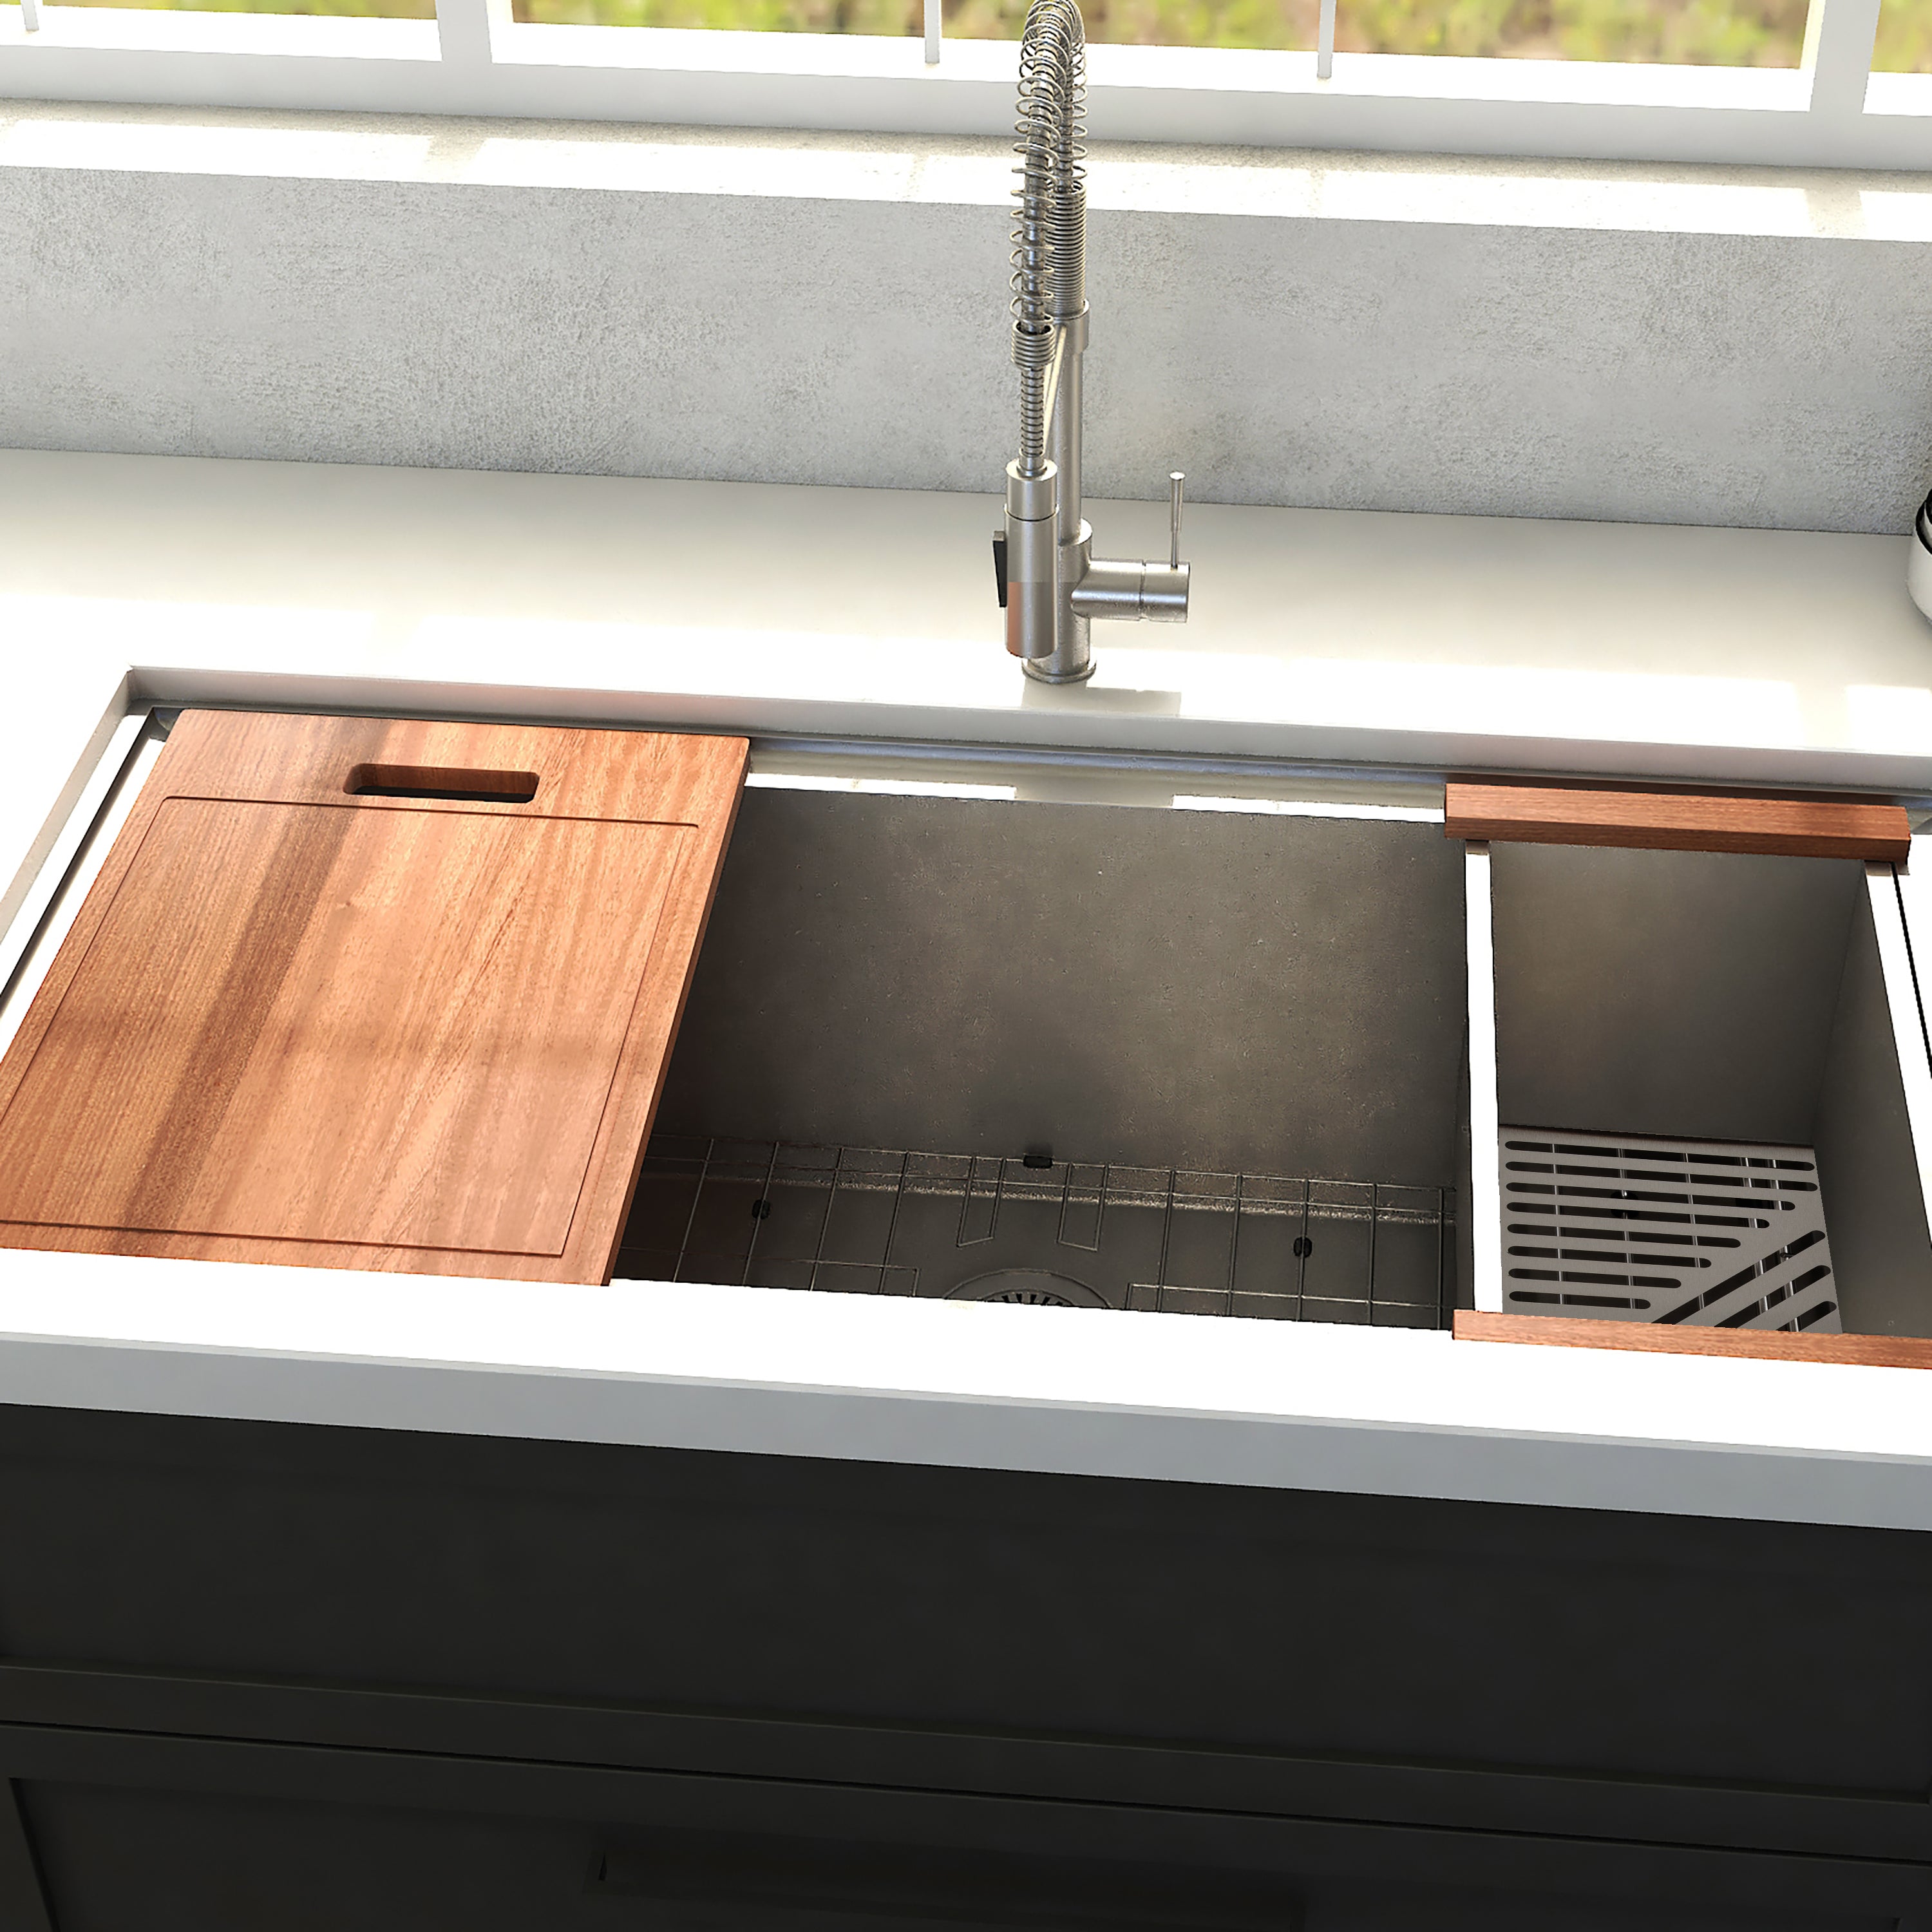 ZLINE 33" Garmisch Undermount Single Bowl Stainless Steel Kitchen Sink with Bottom Grid and Accessories (SLS-33)